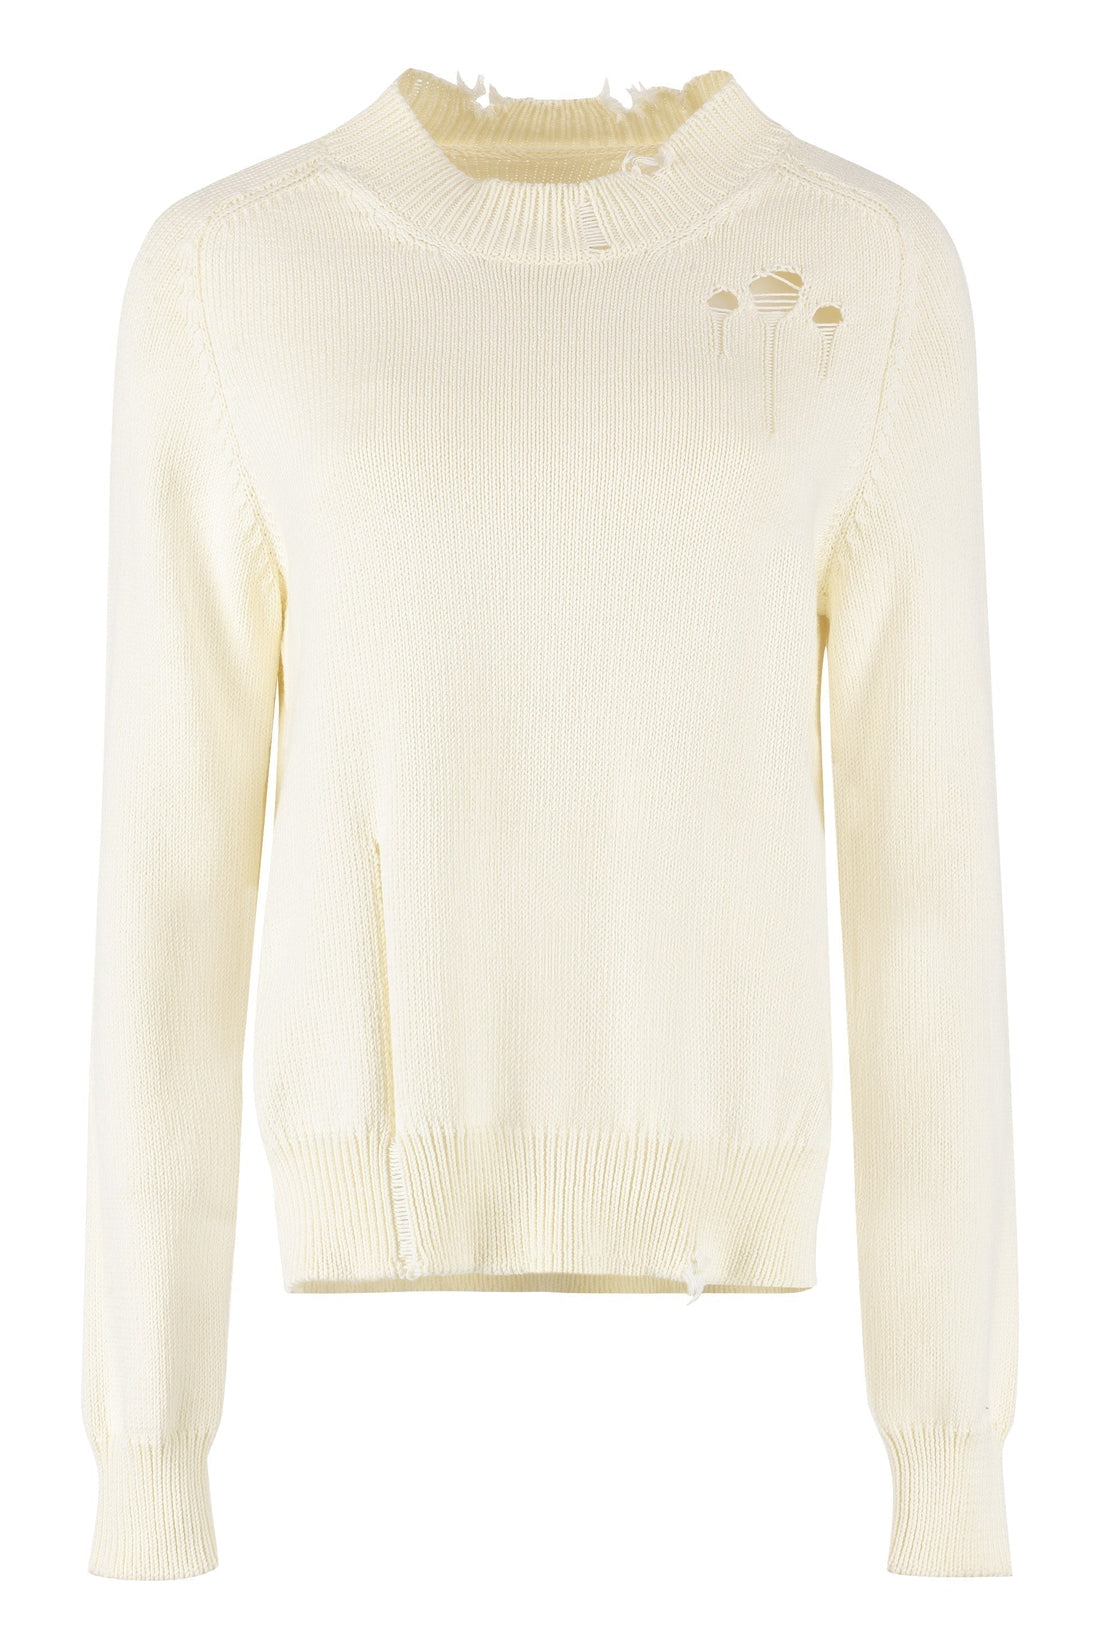 Maison Margiela-OUTLET-SALE-Long sleeve sweater-ARCHIVIST